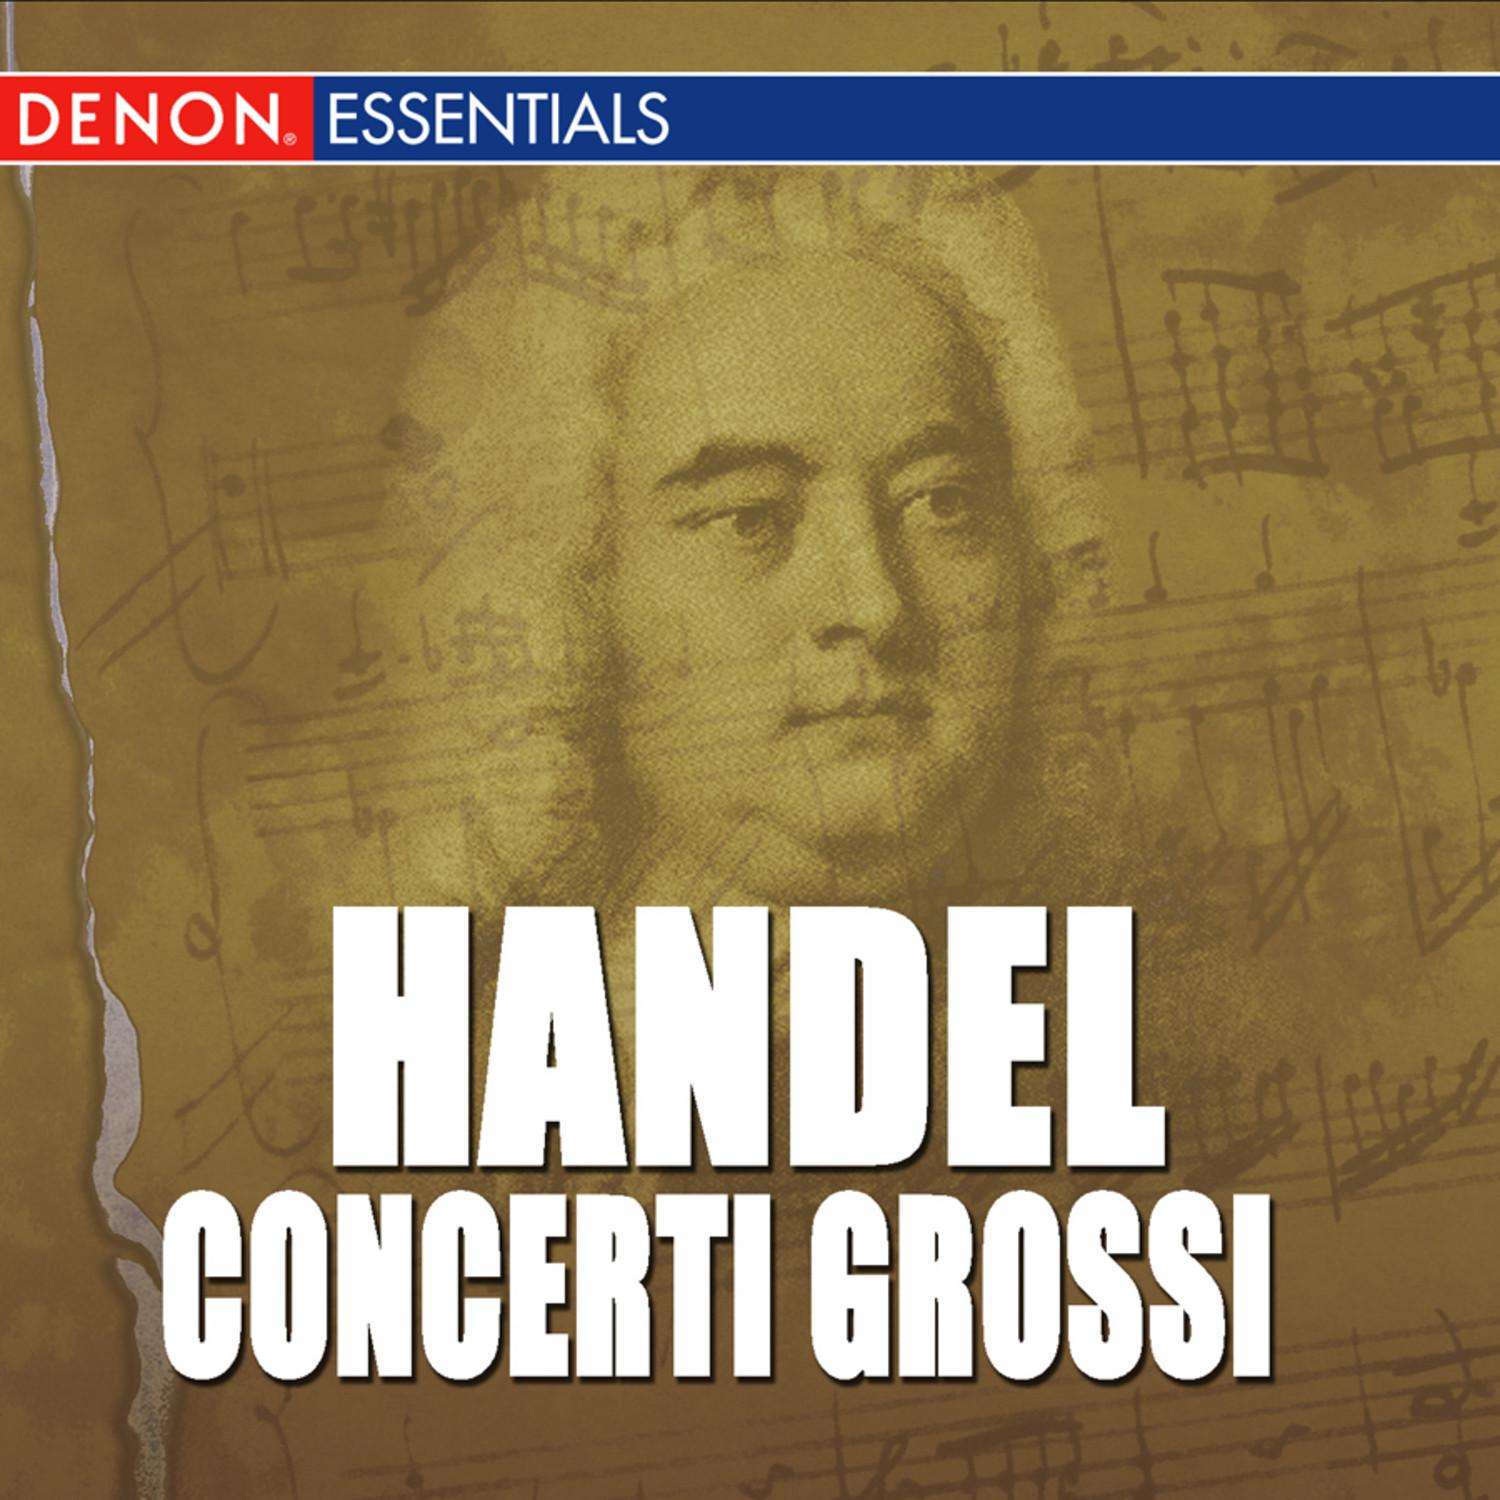 Concerto Grosso, Op. 6: No. 9 in F Major, HWV 327: II. Allegro